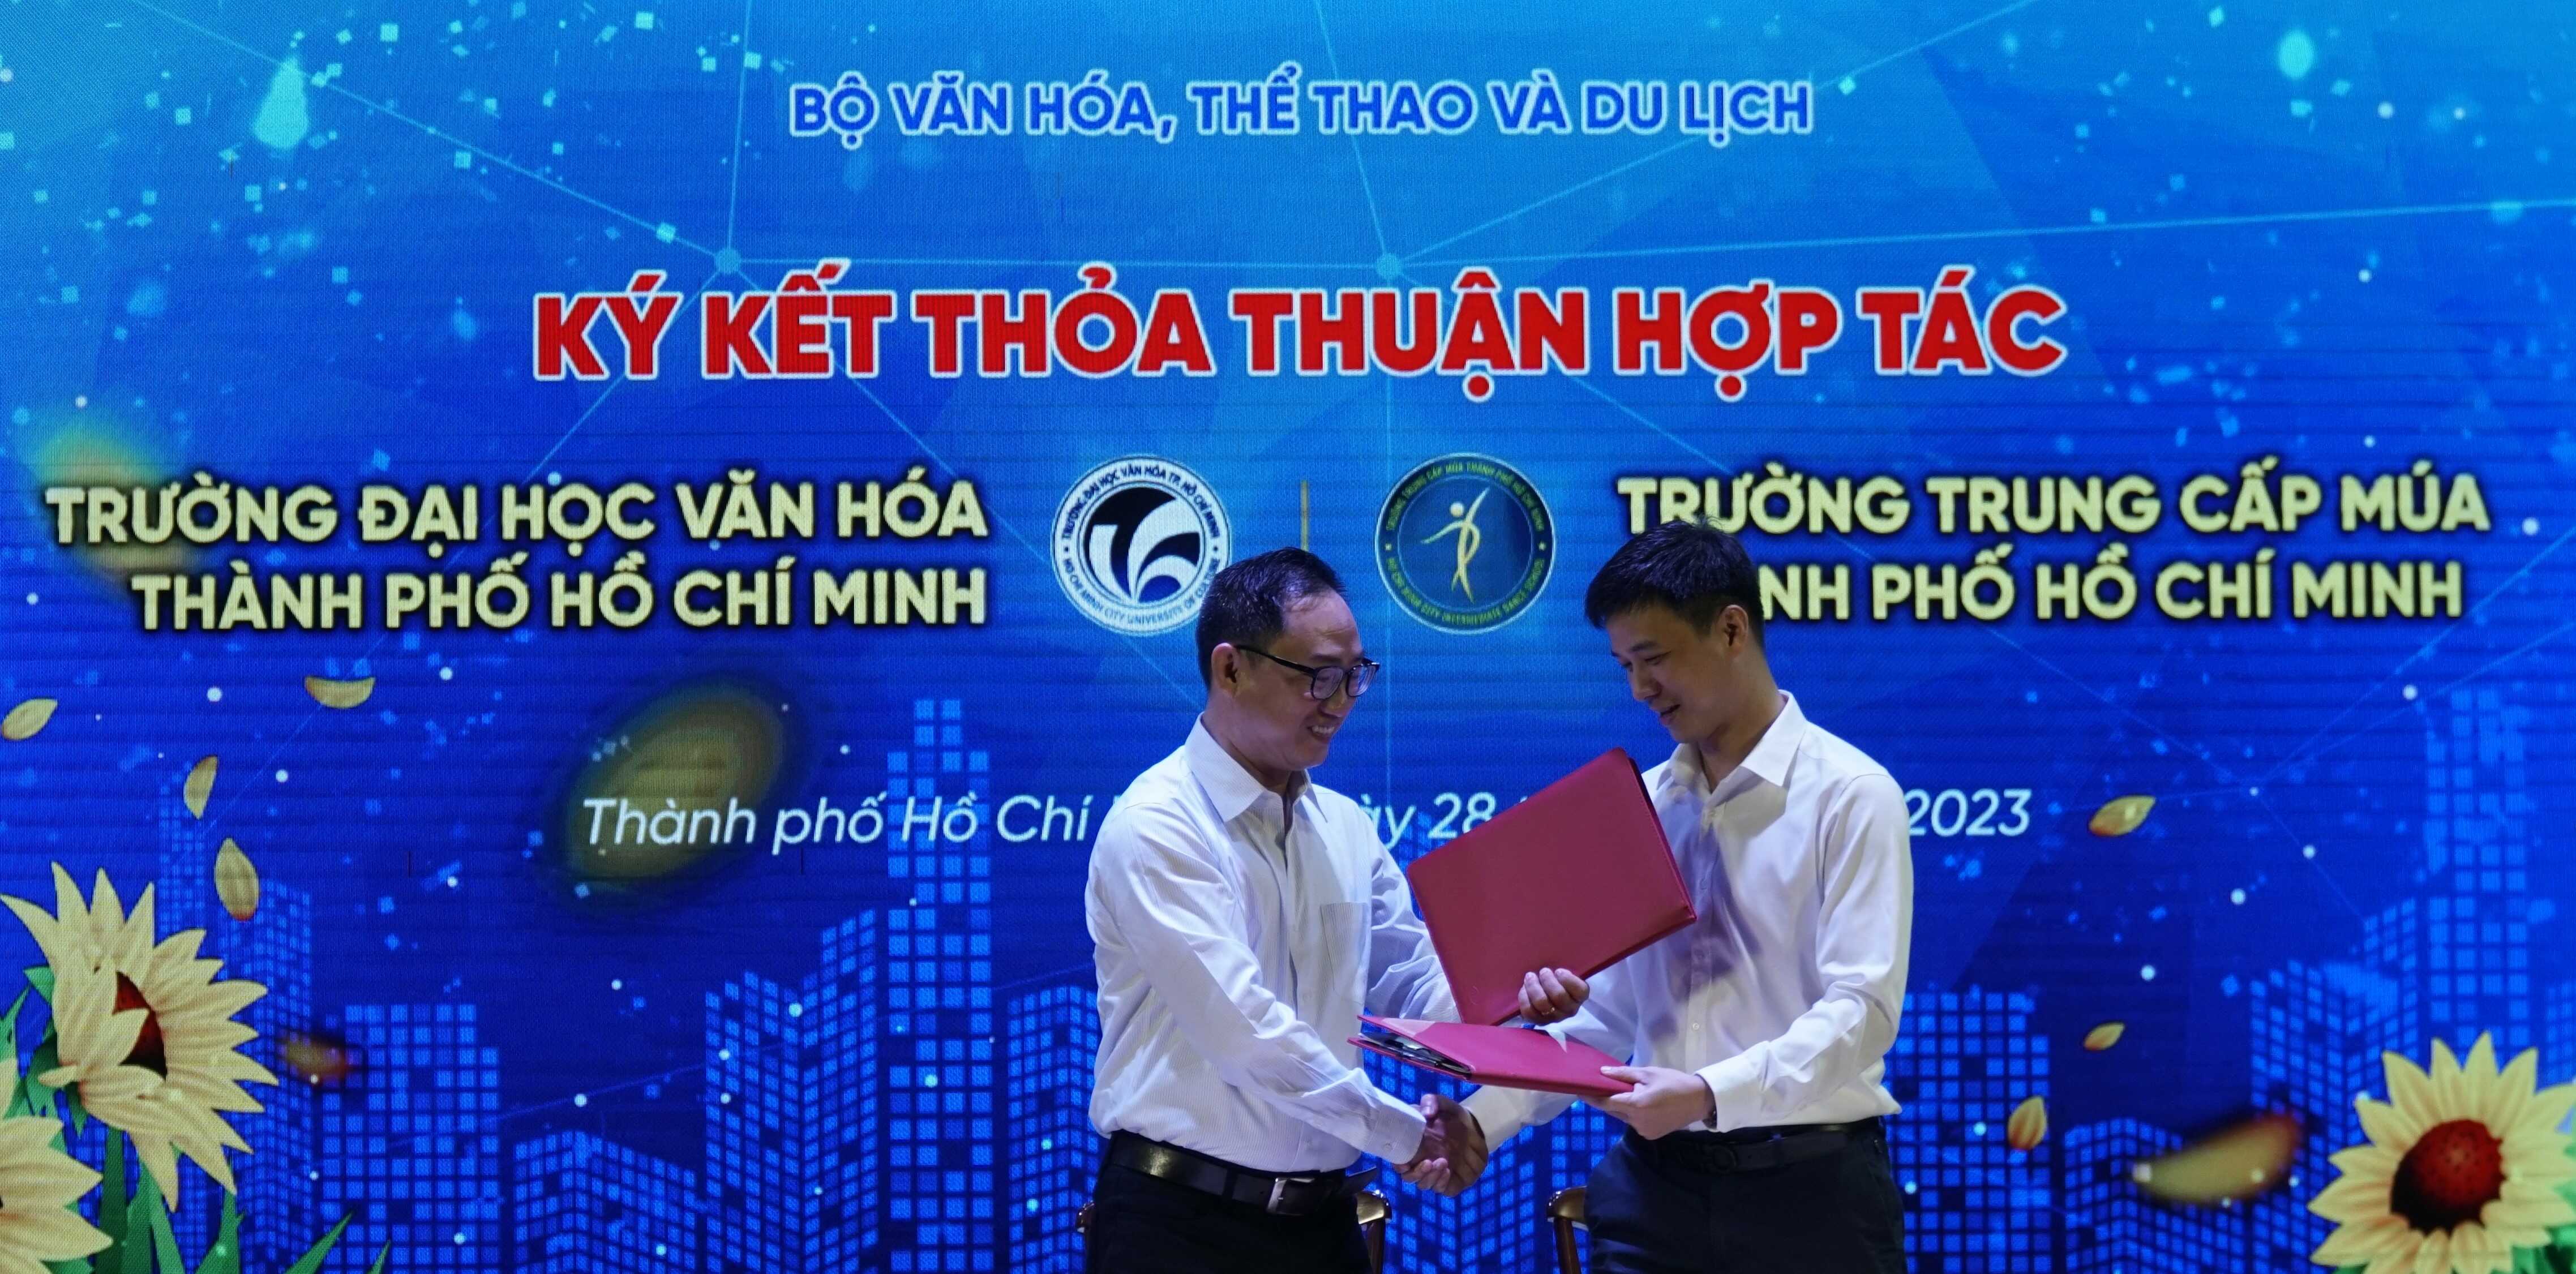 Lễ ký kết biên bản ghi nhớ thỏa thuận hợp tác giữa 365bet de
.HCM và Trường Trung cấp Múa TP.HCM